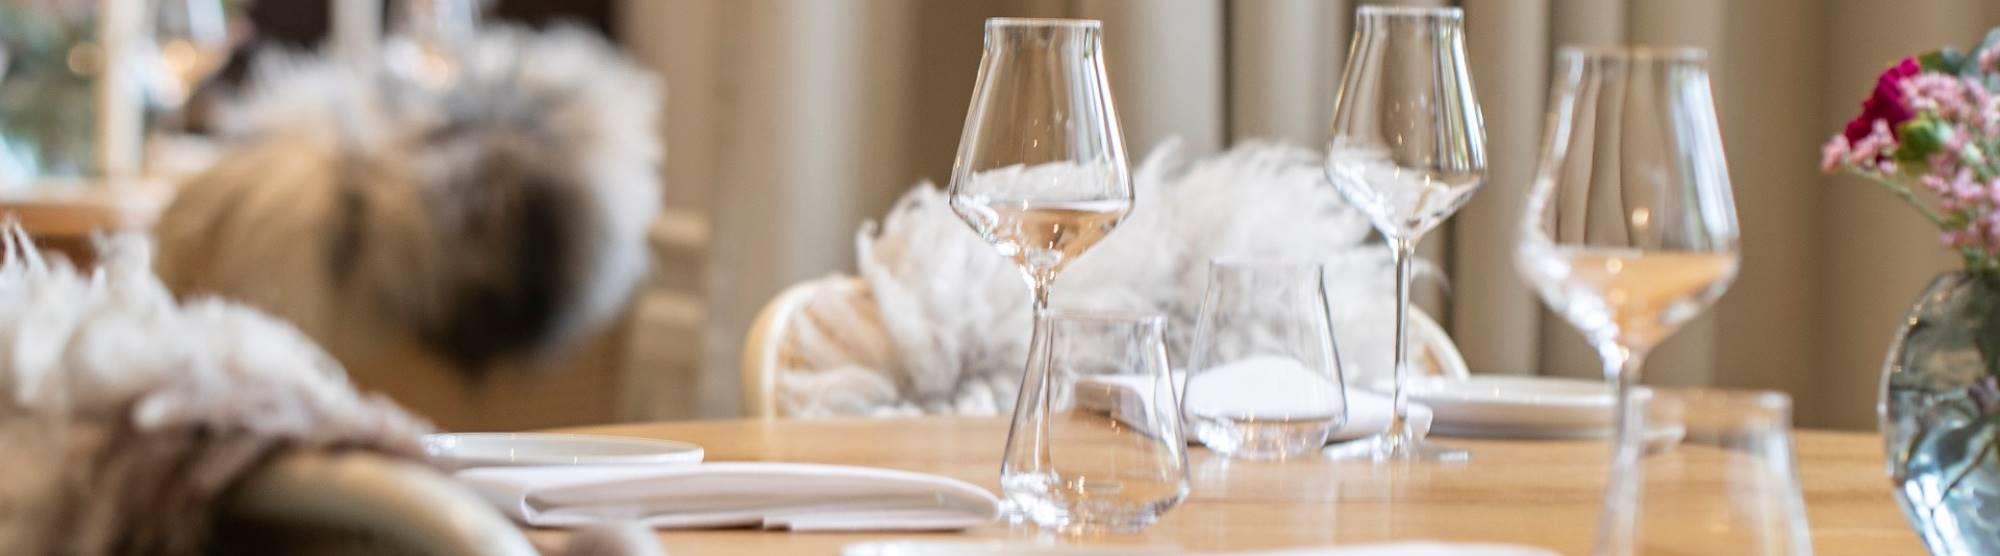 Luksusopphold i Bergen - Eksklusive mat- og drikkeopplevelser - BARE Restaurant - eneste restaurant i Bergen med en stjerne i Michelin guiden